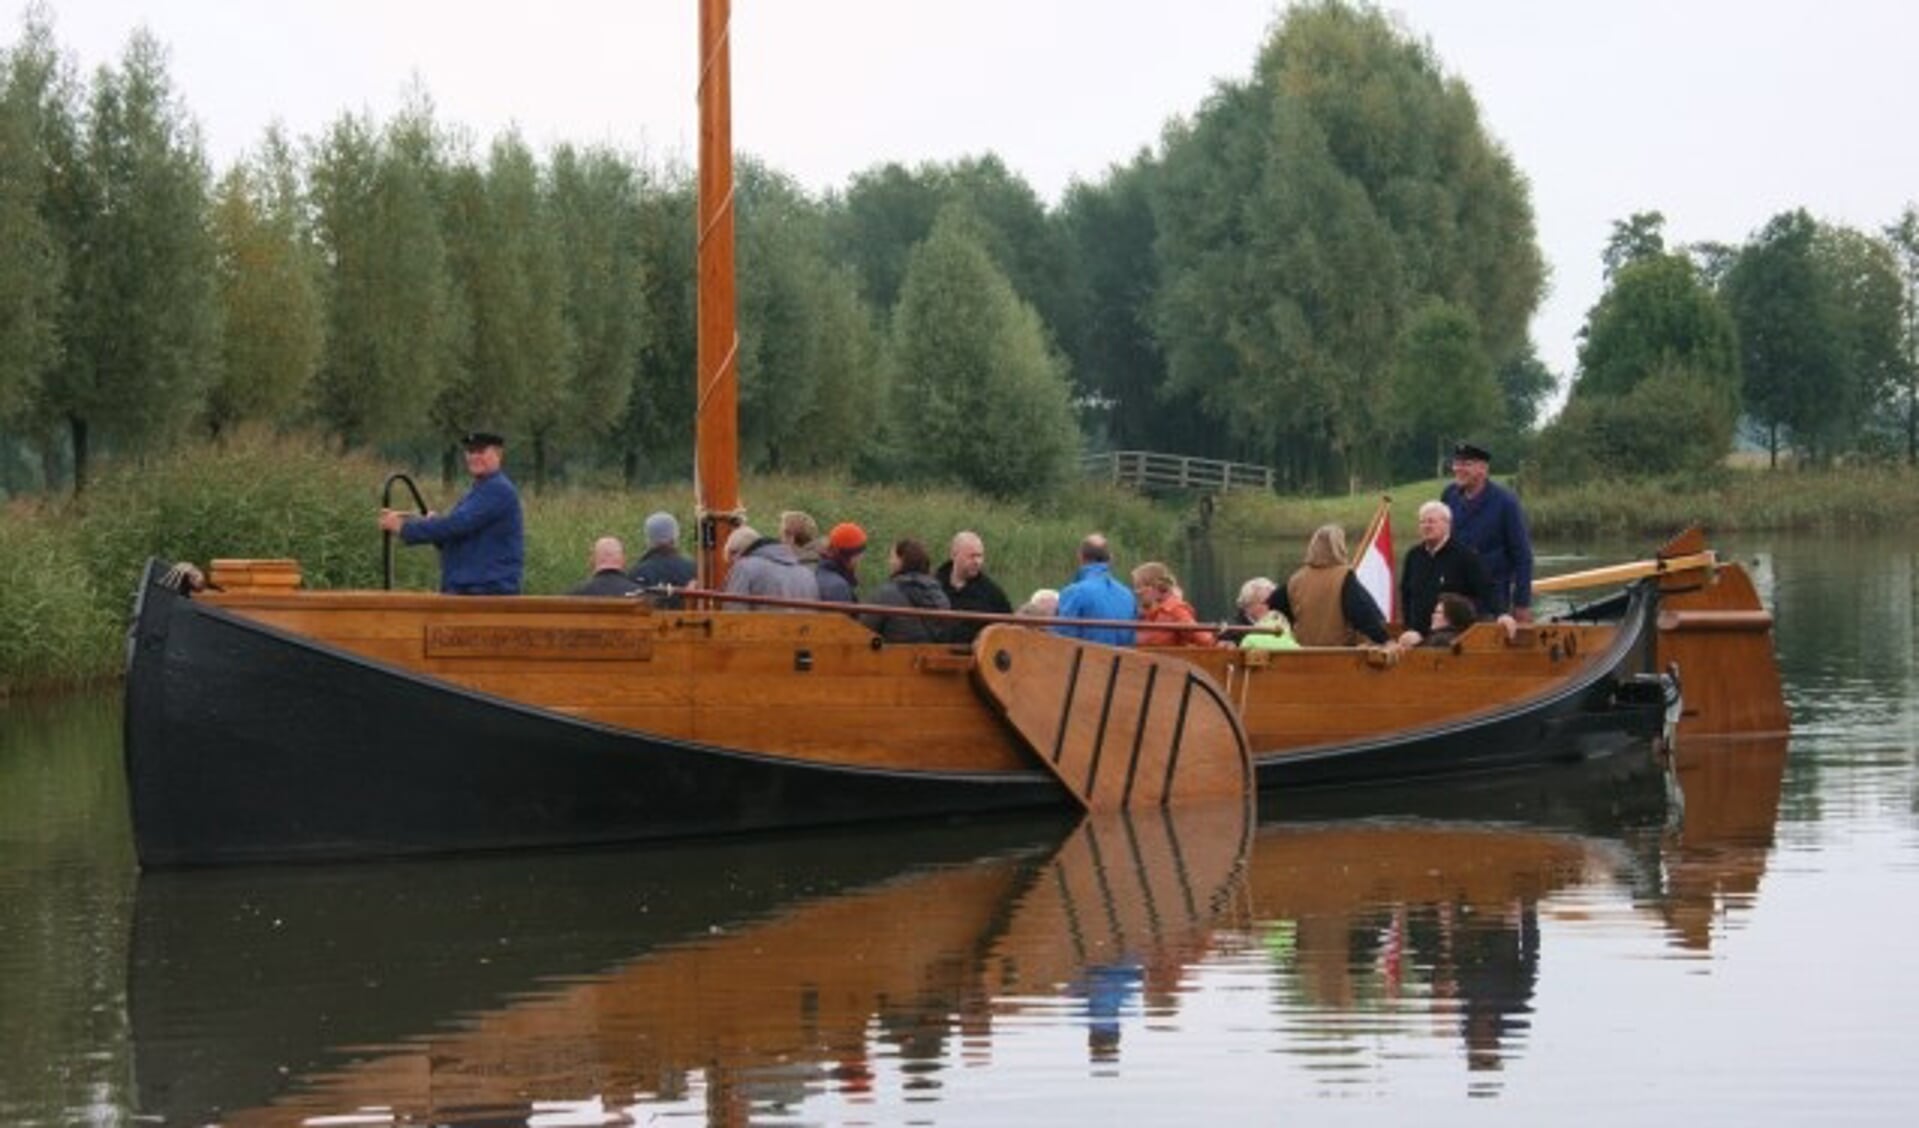 Om het varen met de Enterse Zomp mogelijk te maken is de Regionale Stichting Enterse Zomp op zoek naar schippers en gastvrouwen.